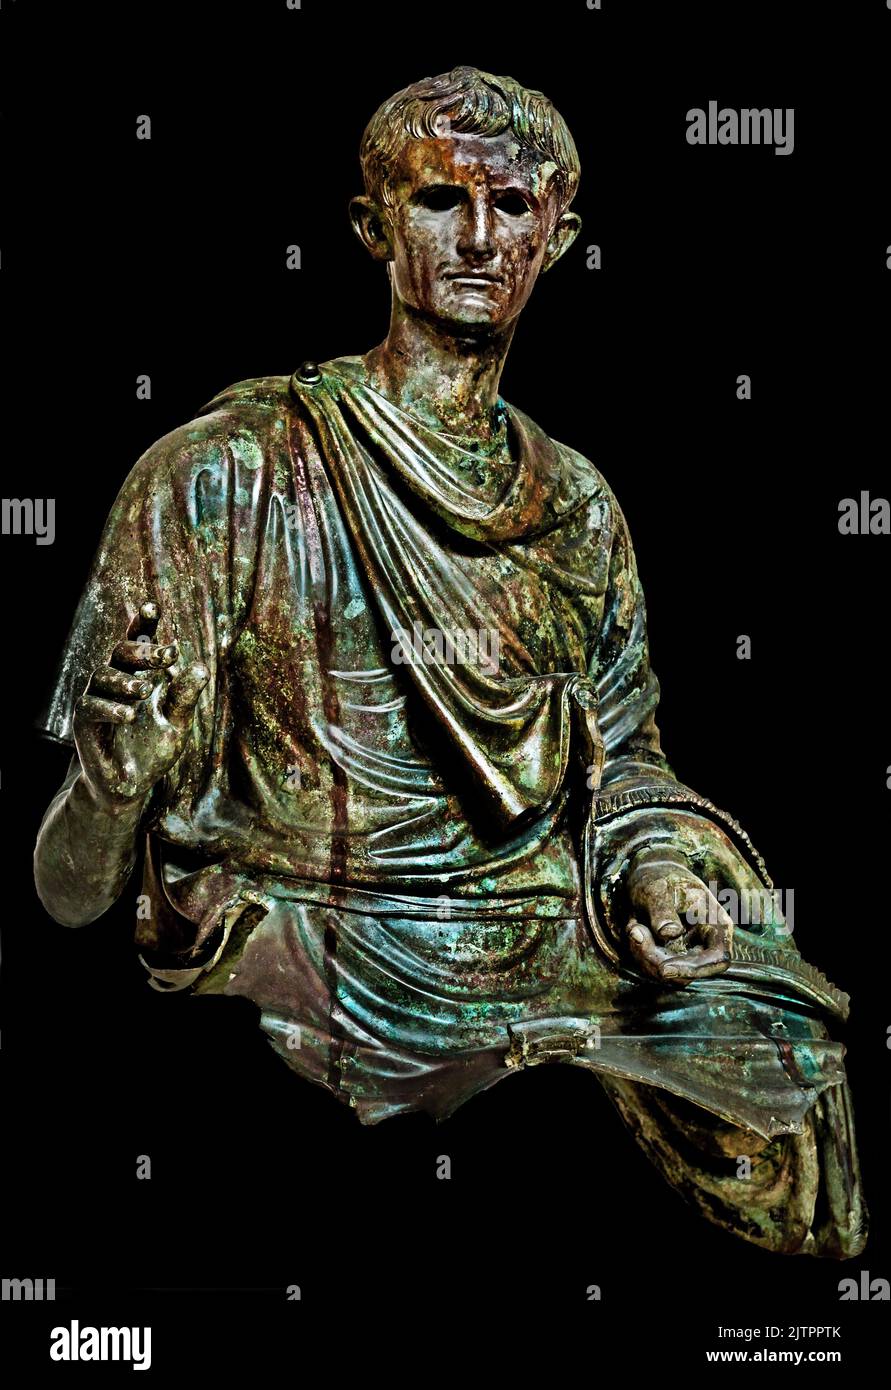 Statua in bronzo romana, imperatore romano Augusto, 12-10 a.C., rinvenuta nel mare Ageo, isola di Eubea, Museo Archeologico Nazionale di Atene. Foto Stock